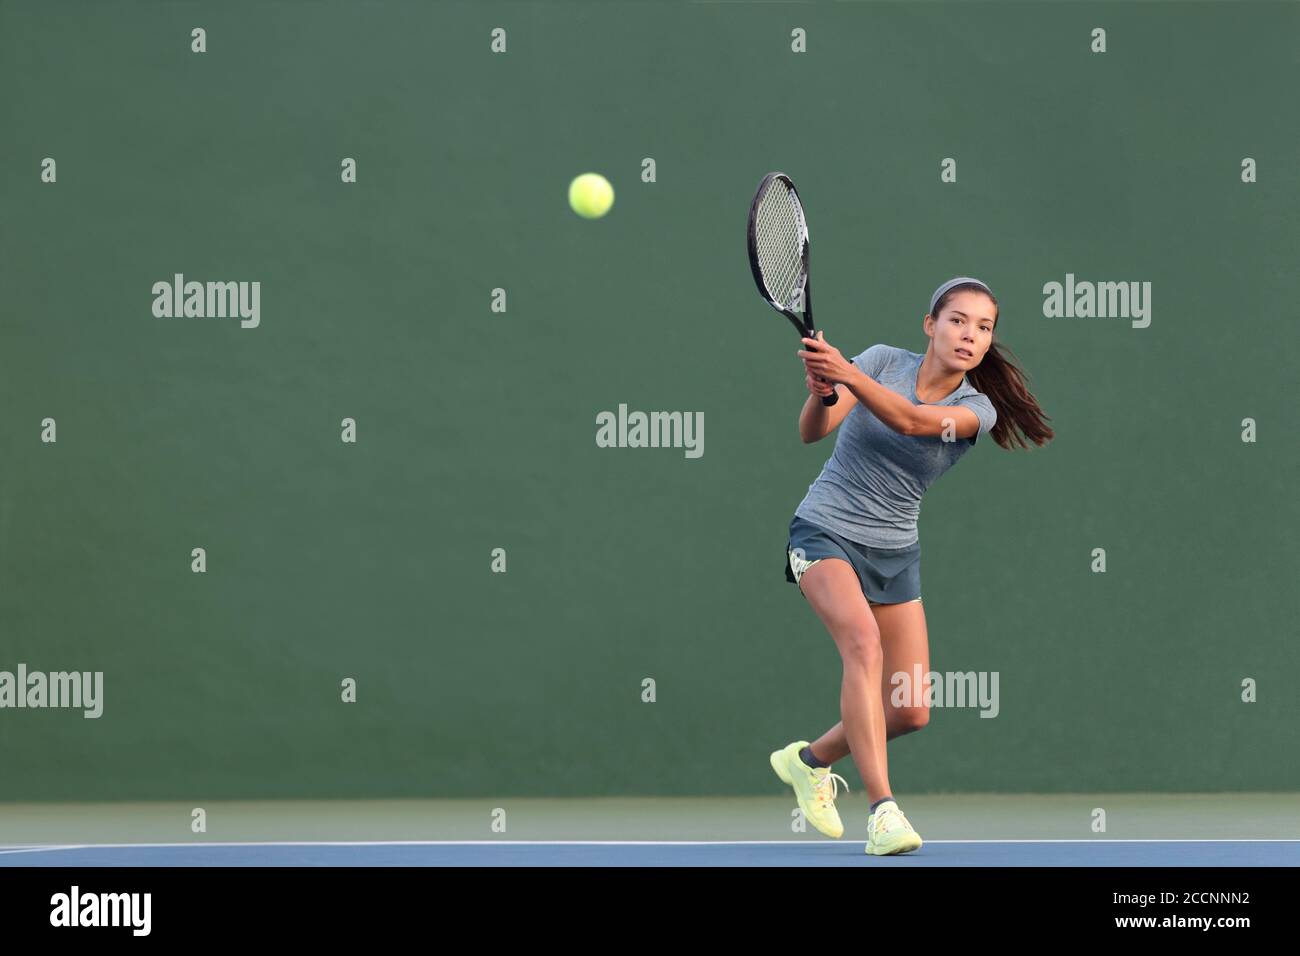 Tenis jugando mujer golpeando pelota en pista dura verde. Chica atleta asiática que regresa servir con raqueta usando falda y zapatos Foto de stock